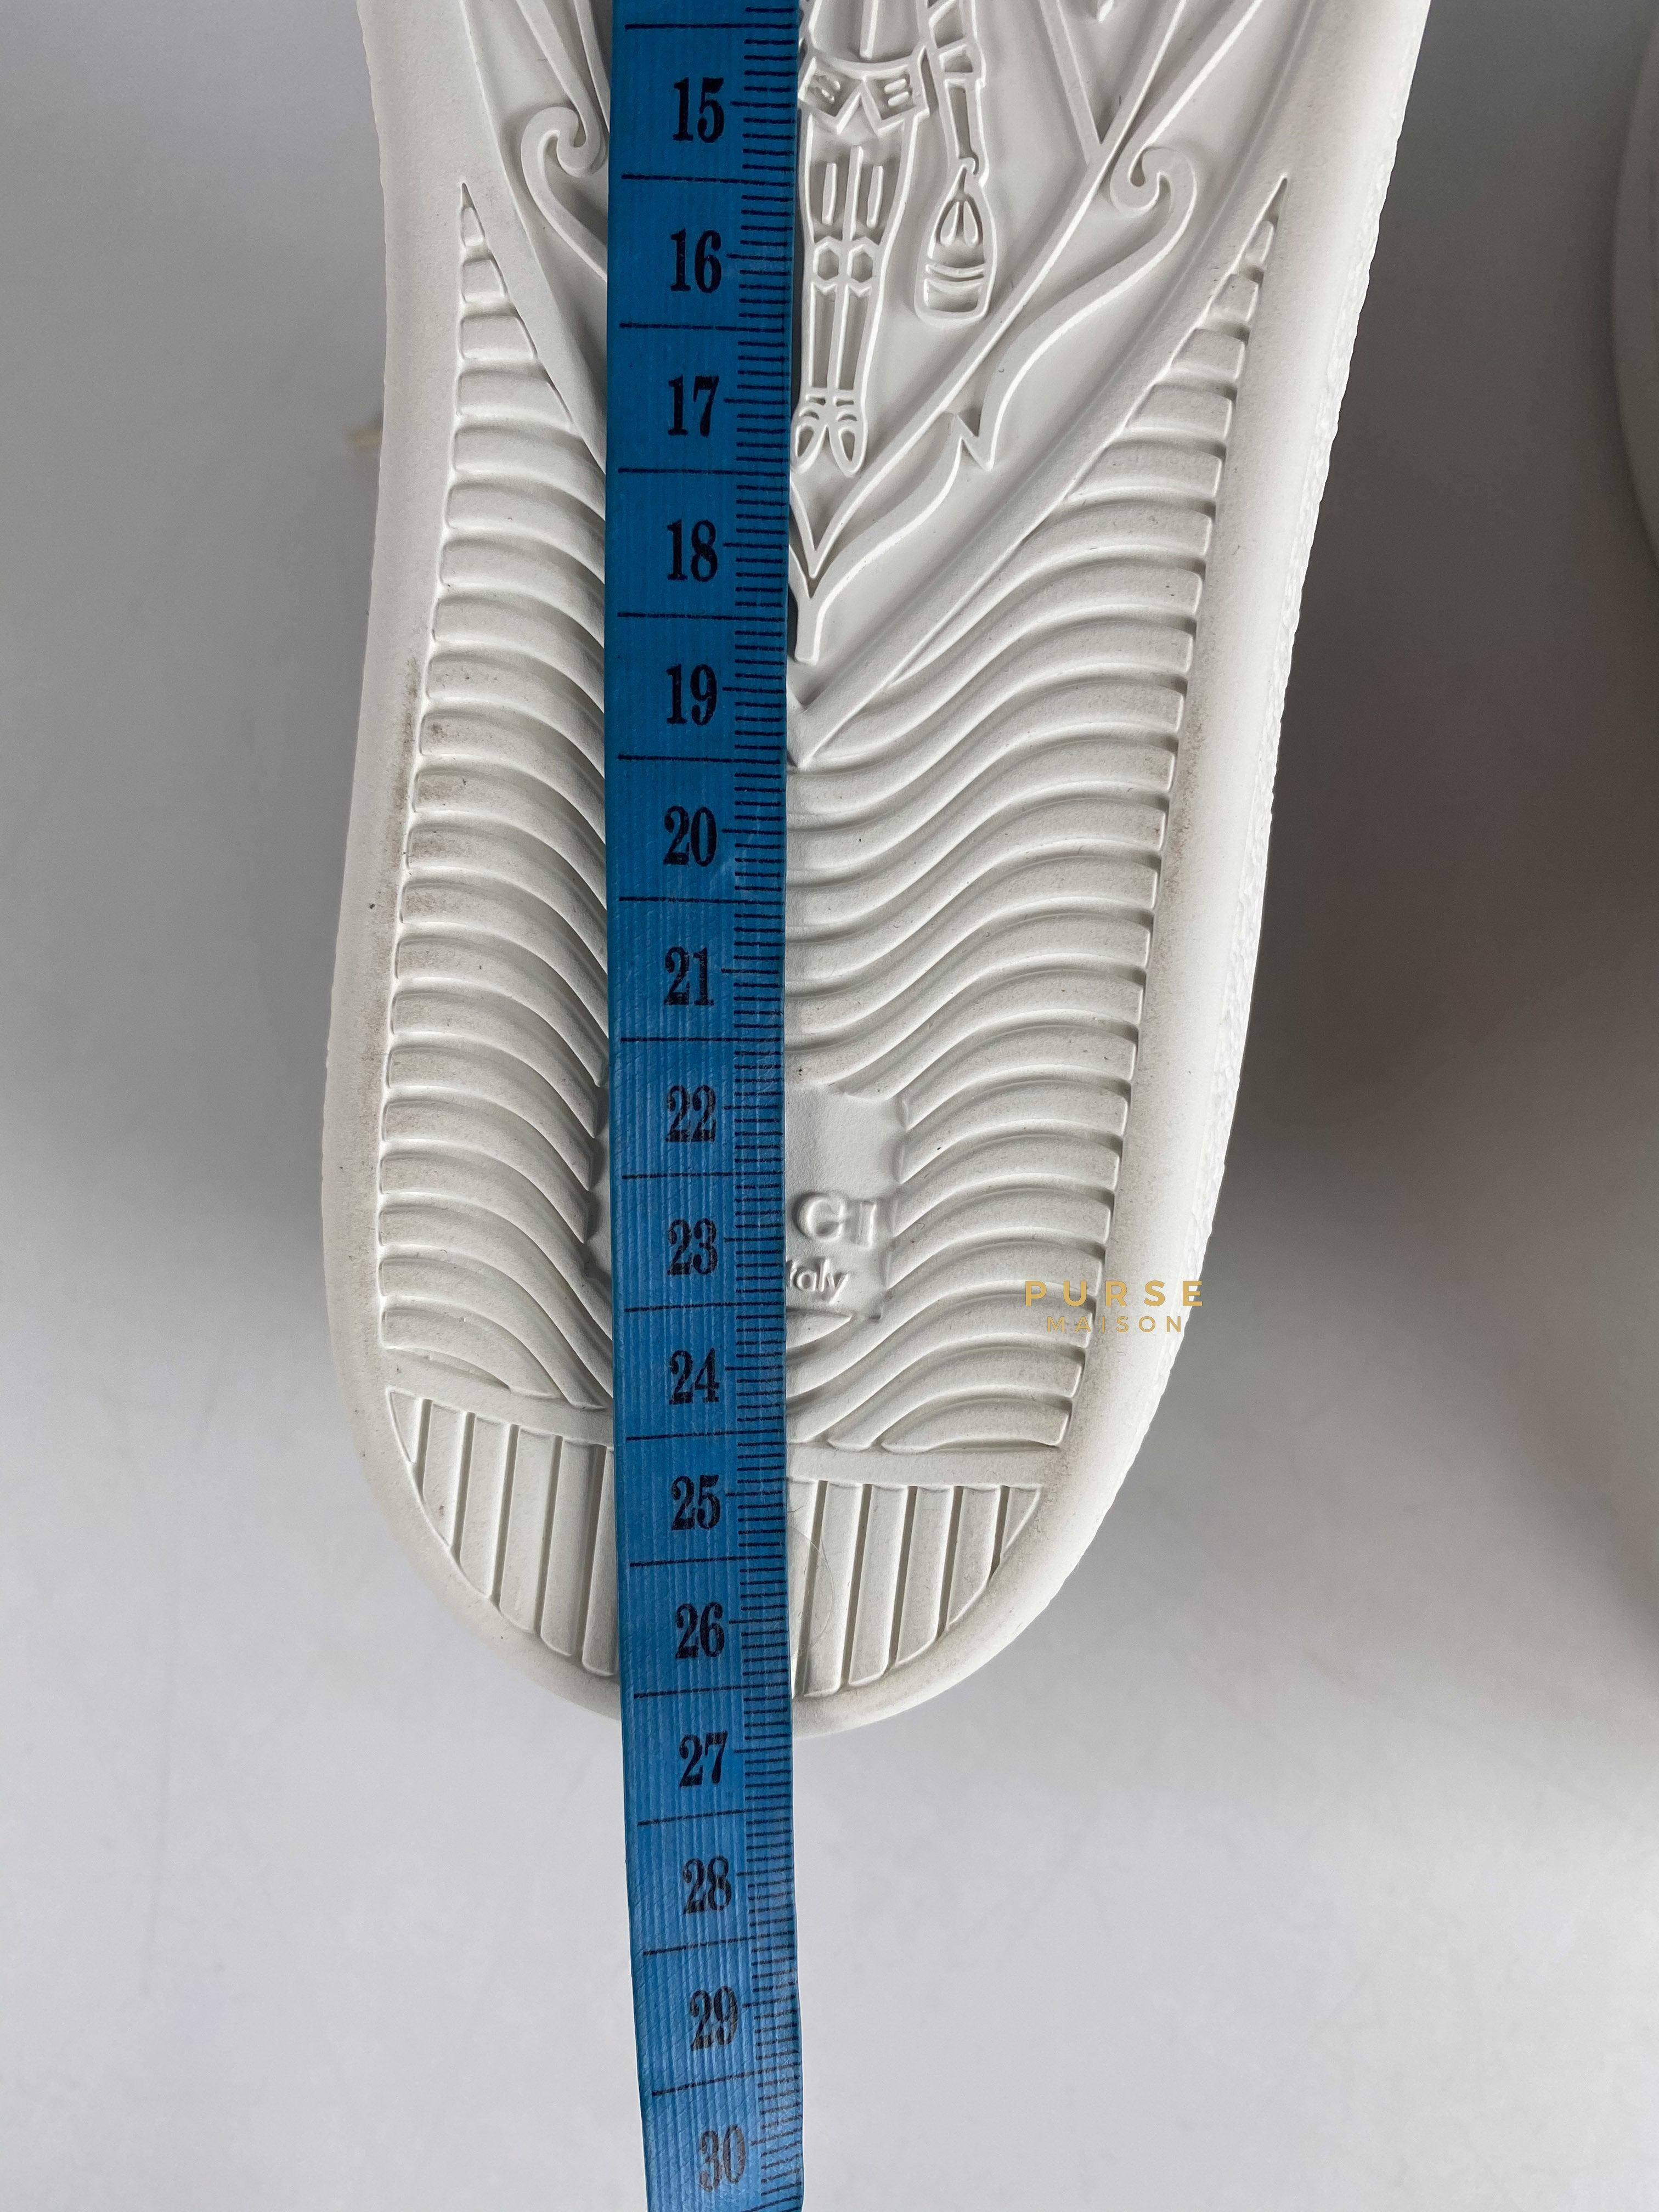 Gucci x Doraemon Ace Sneakers Size 38 EU (25.5cm) | Purse Maison Luxury Bags Shop